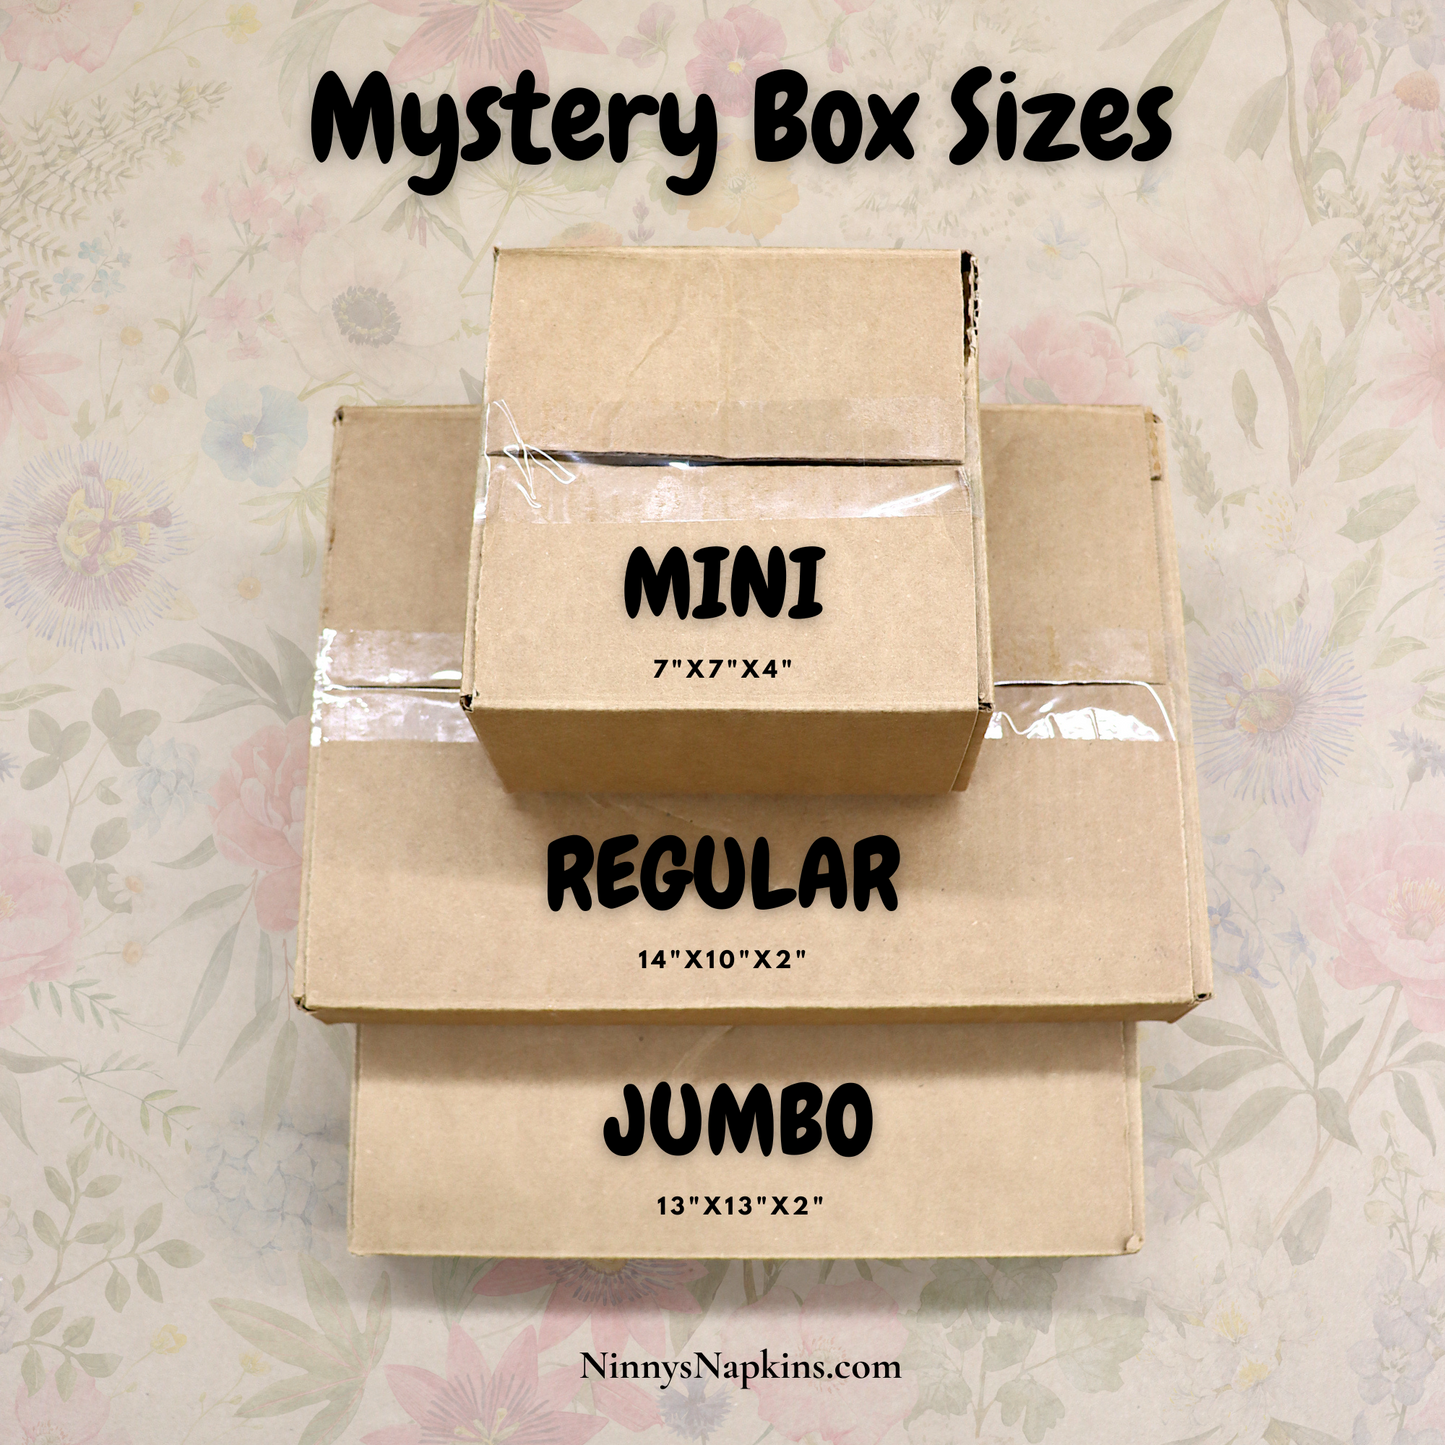 Ninny's Mystery Box Size Chart